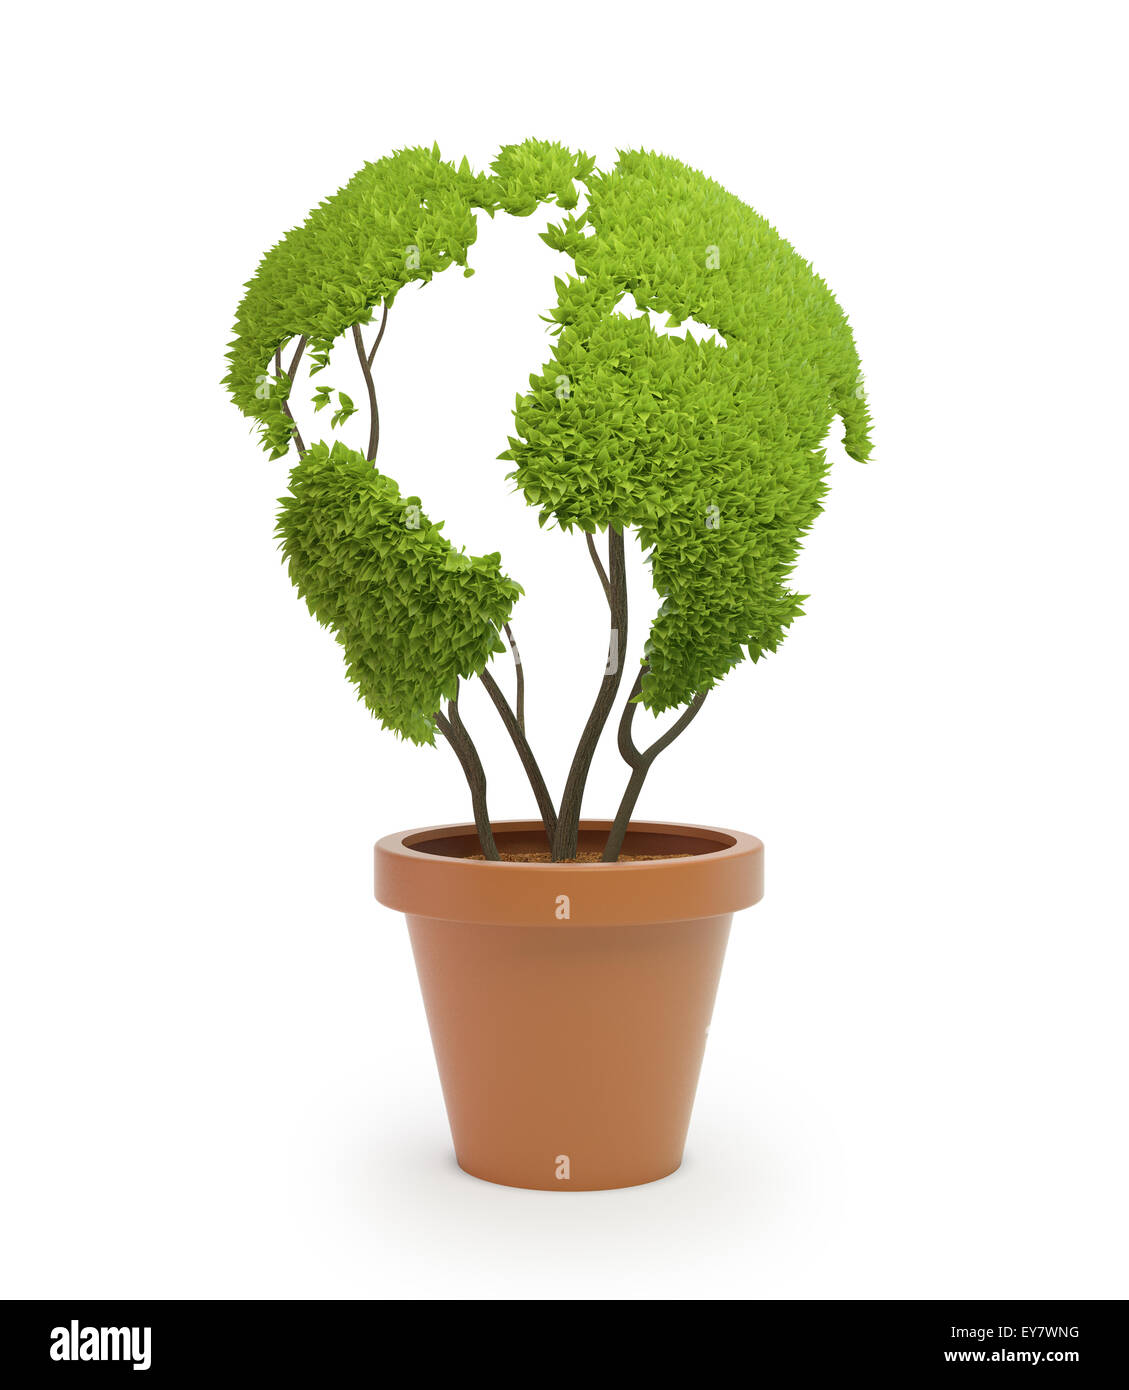 Topfpflanze, geformt wie eine Weltkarte - Ökologie und grüne Lifestyle-Konzept Stockfoto